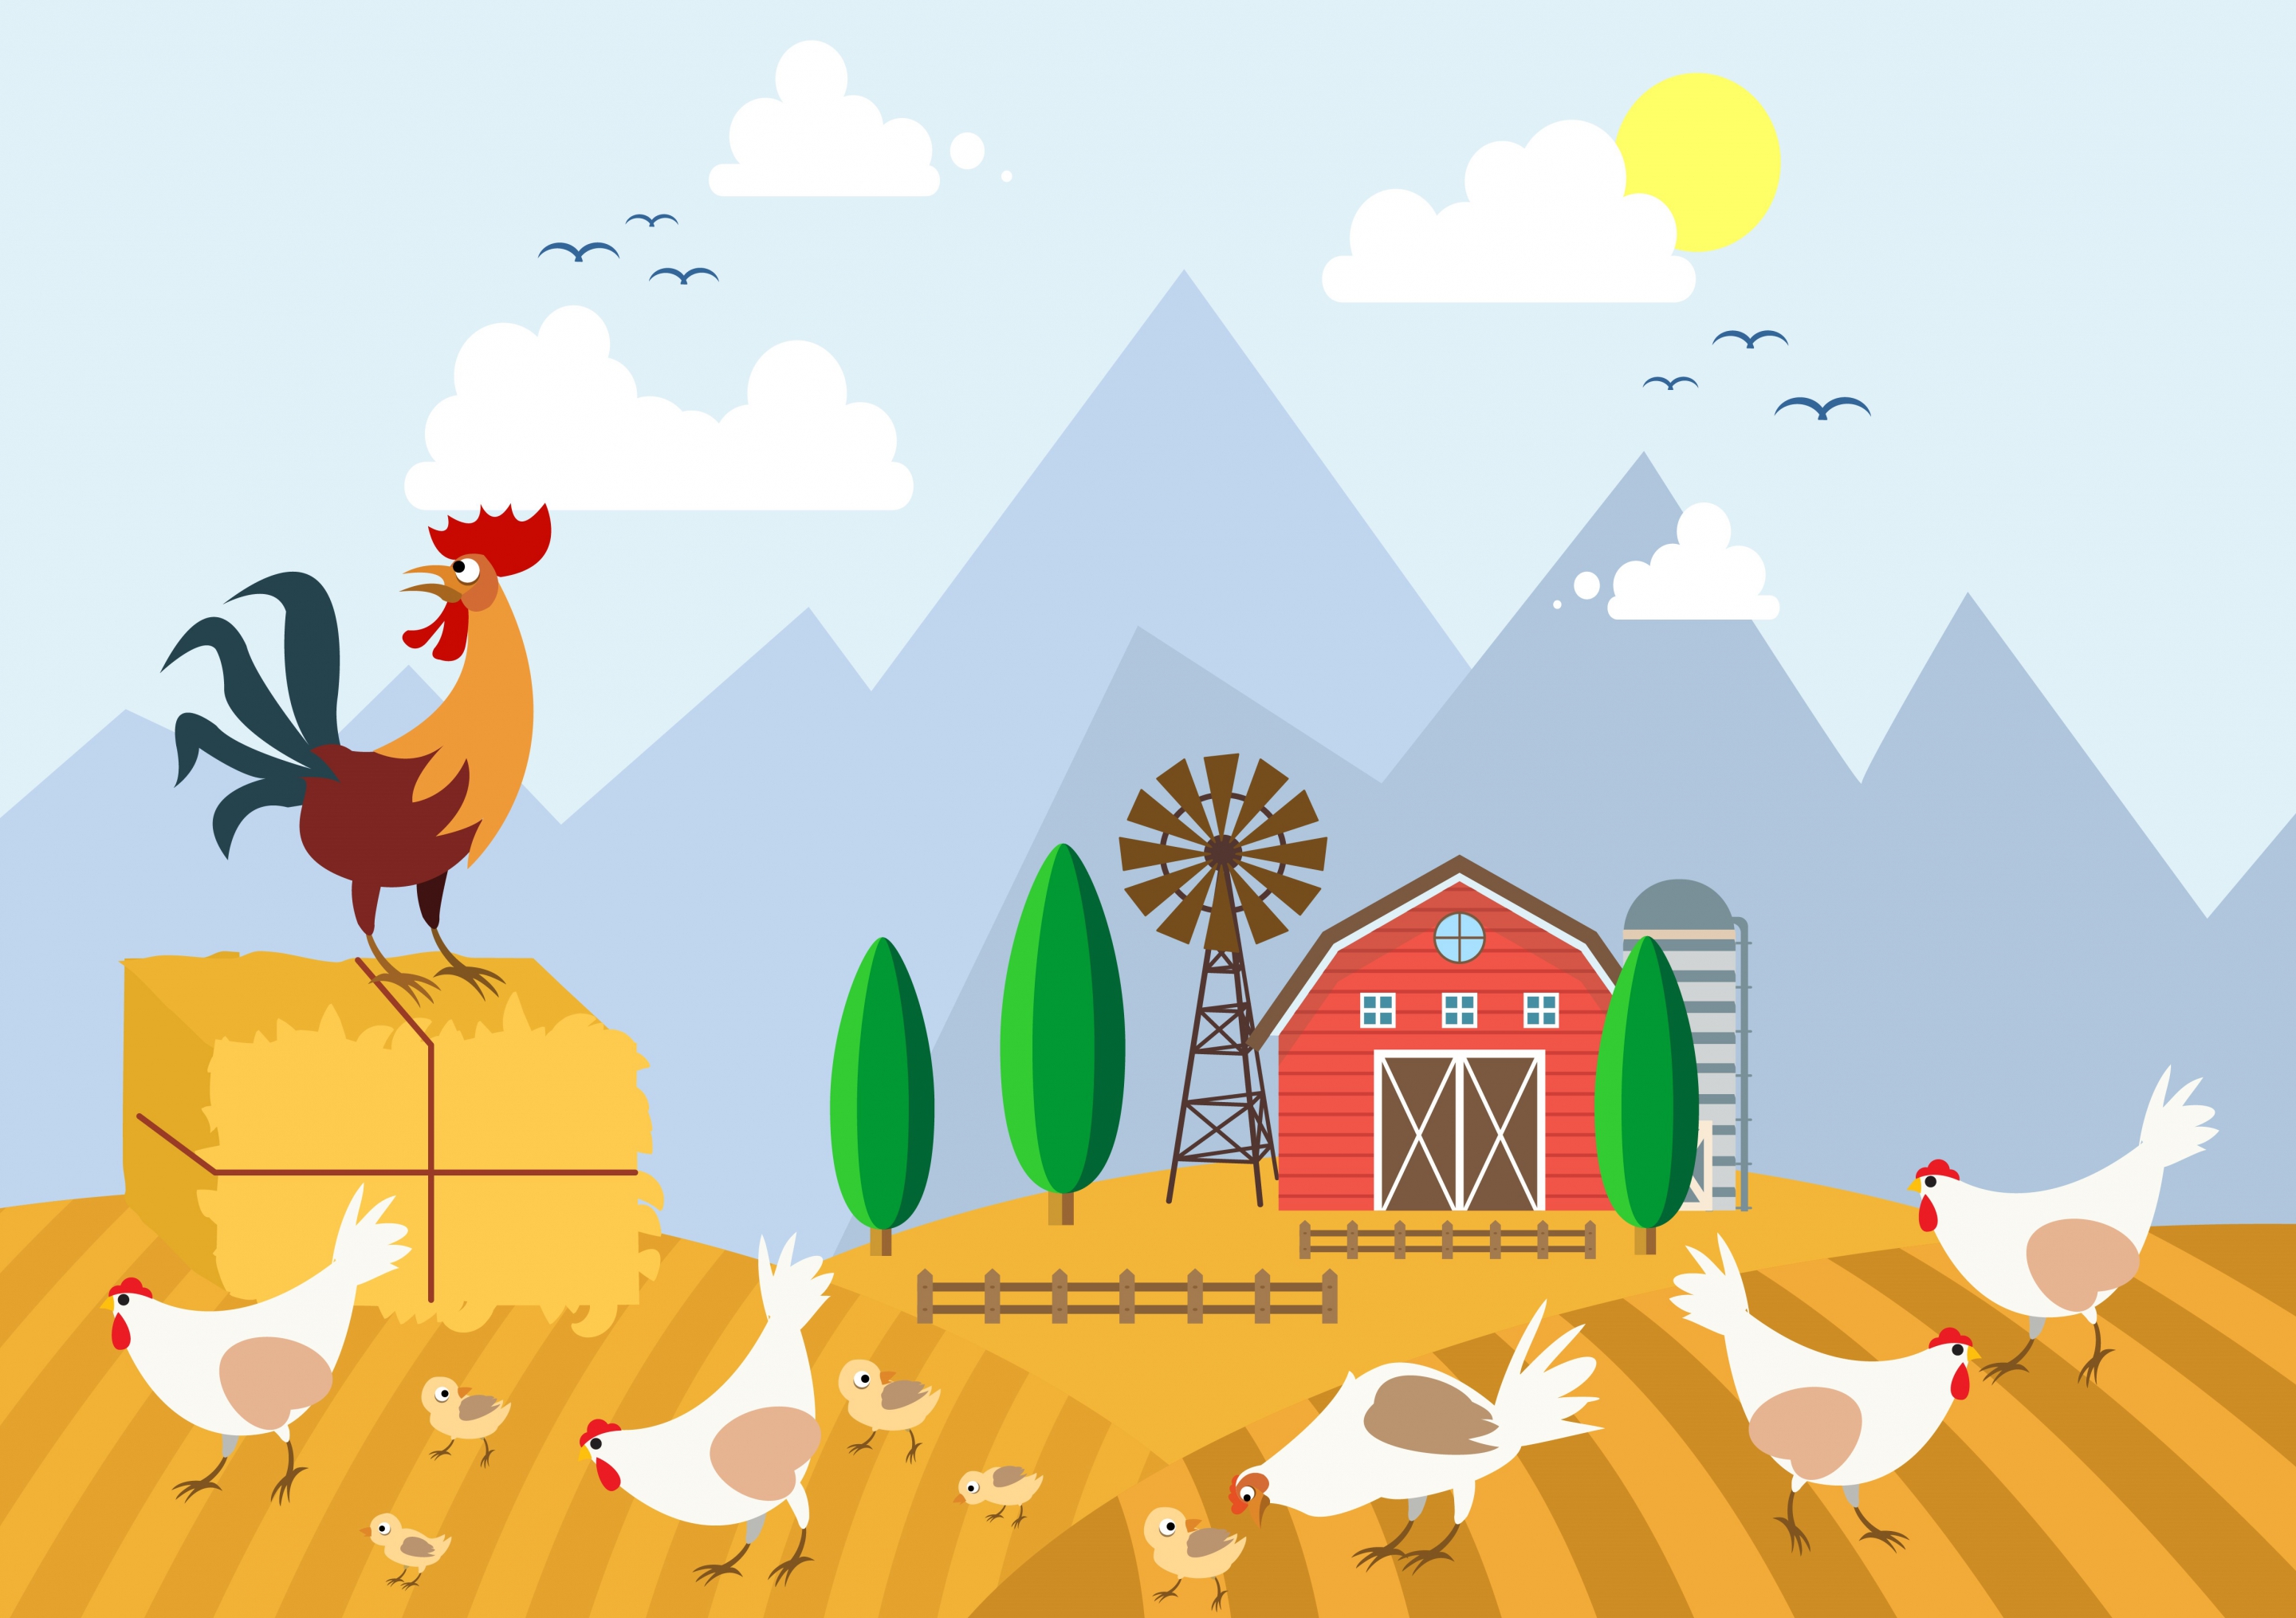 Chicken Farm